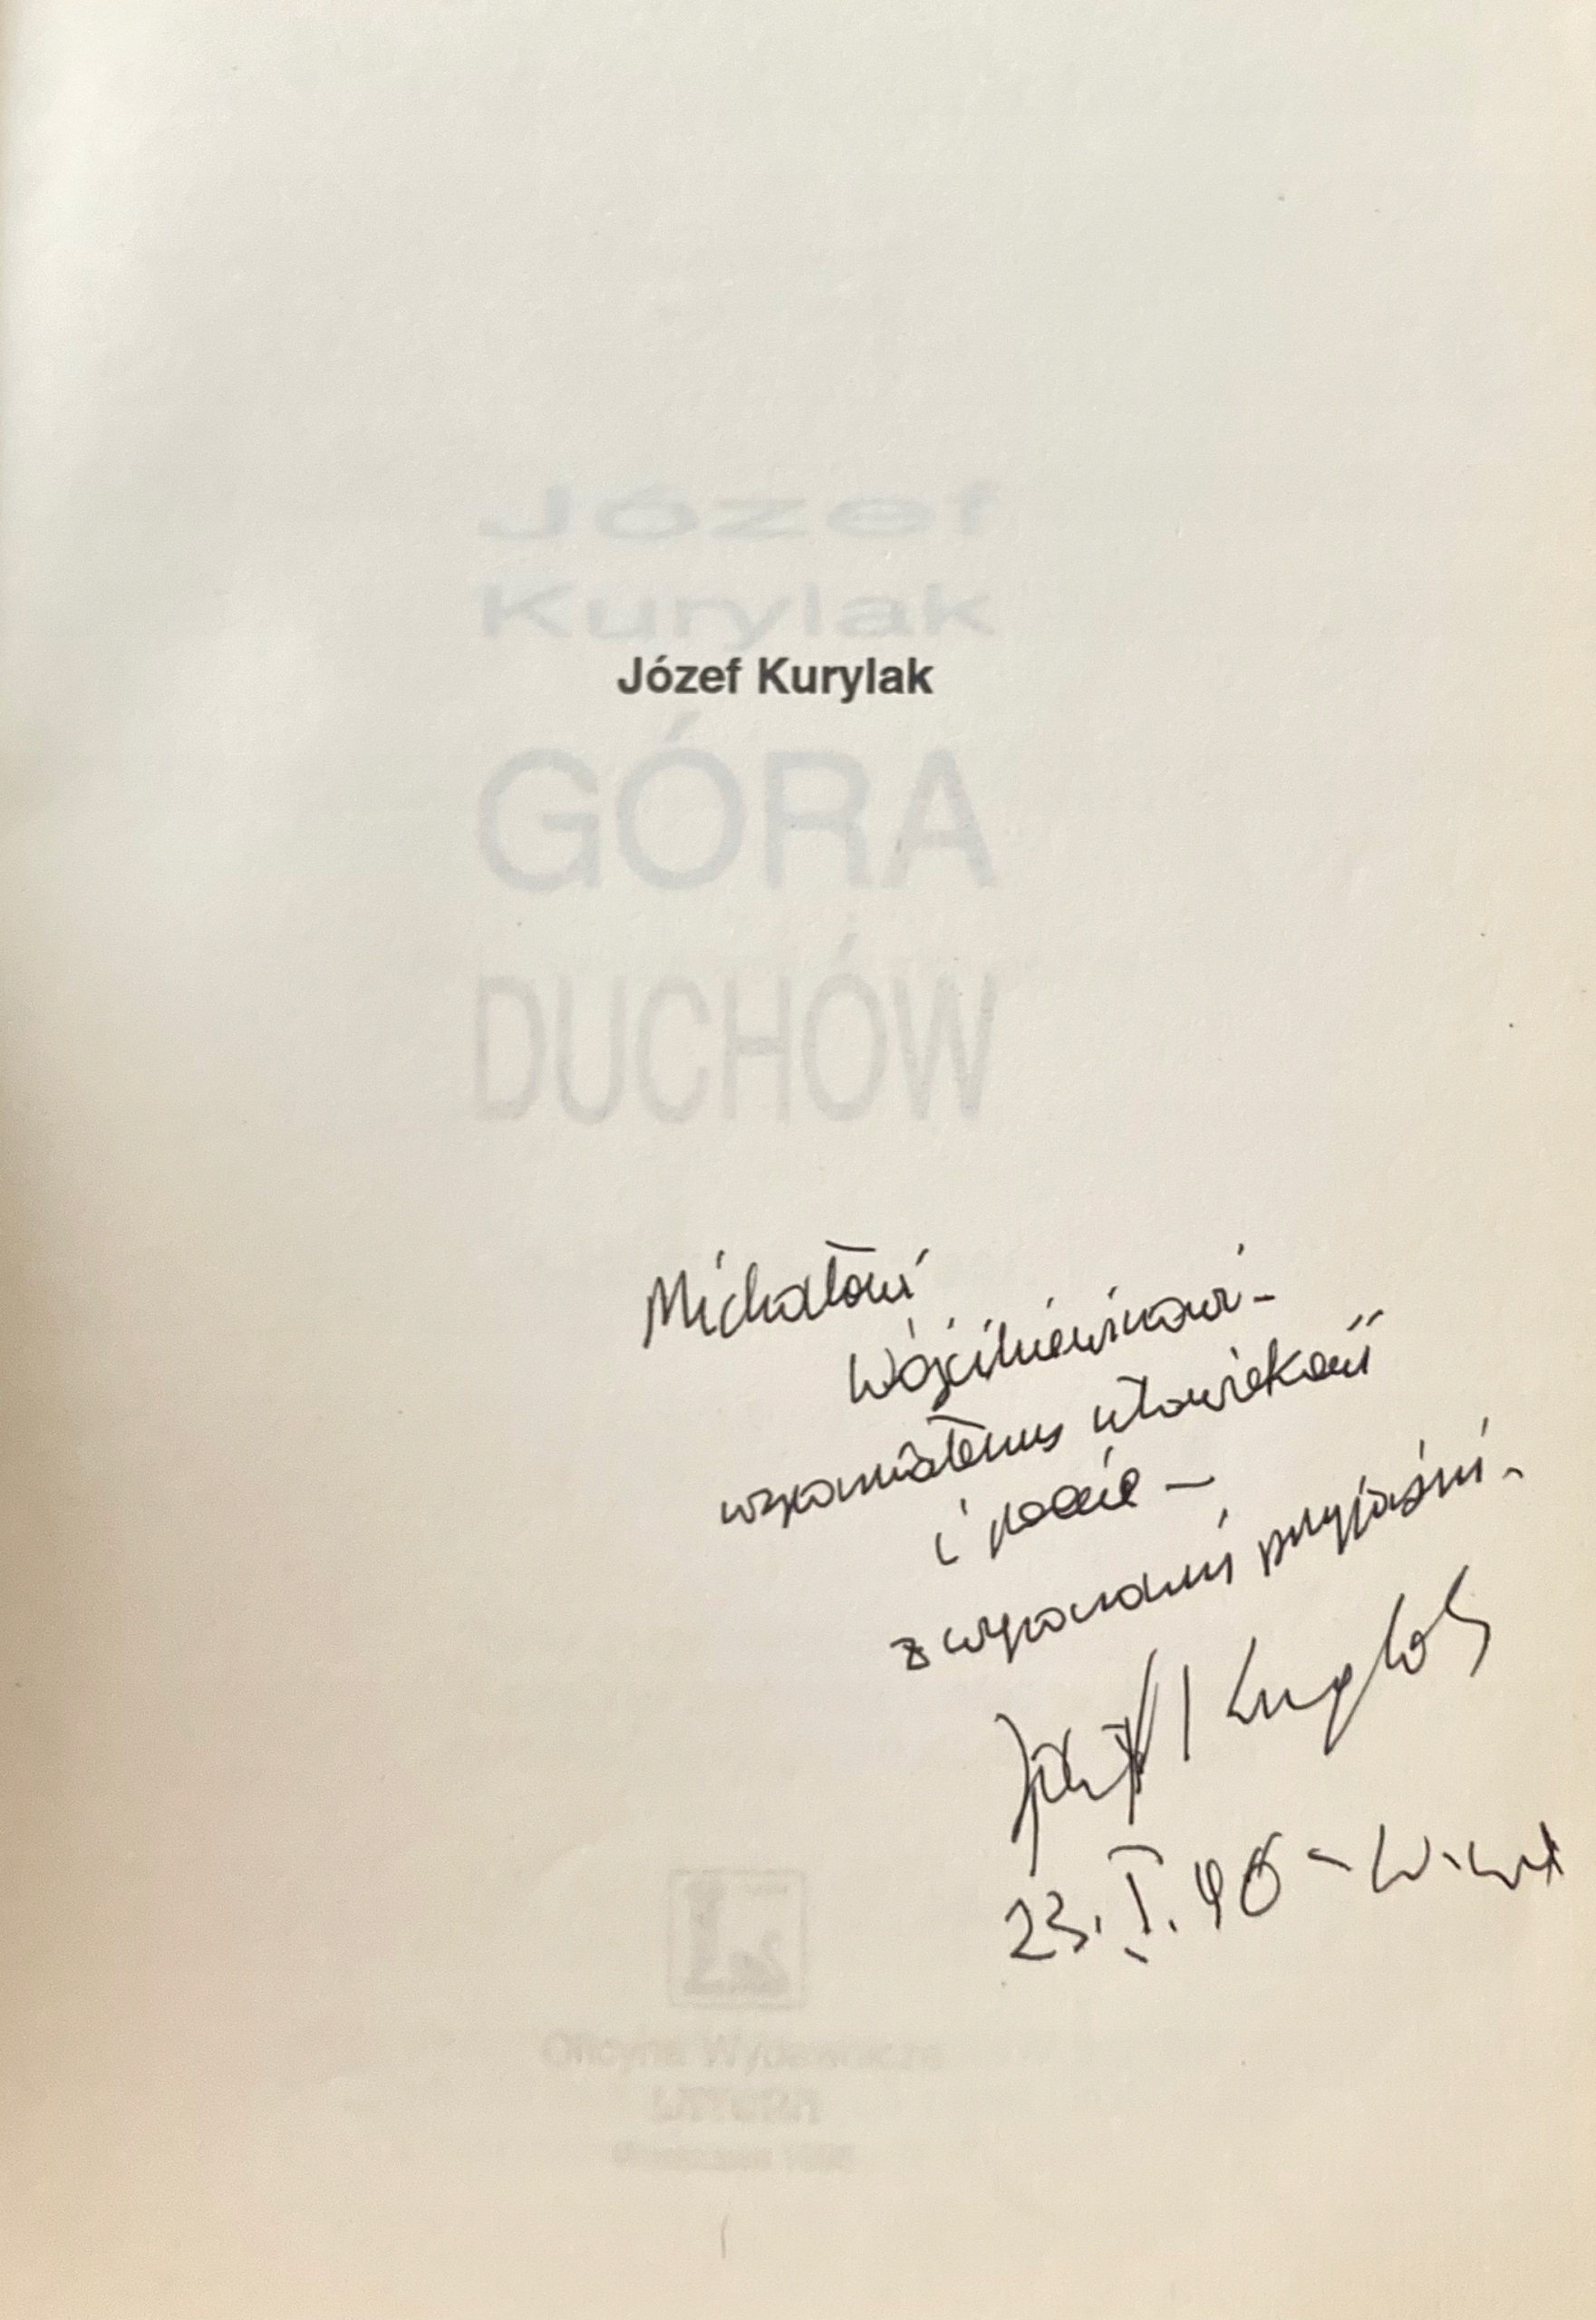 Józef Kurylak - Góra duchów Autograf